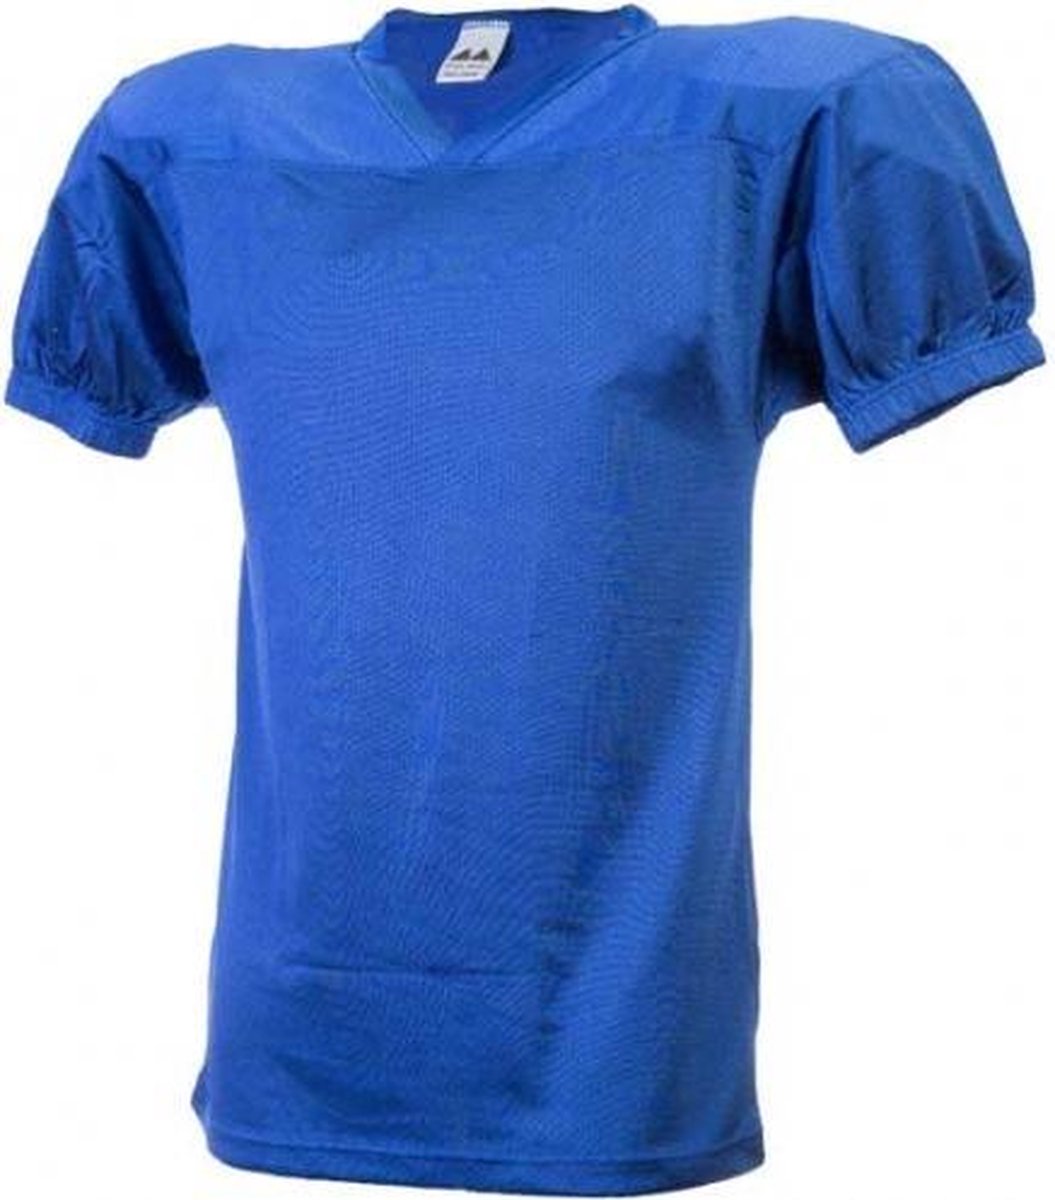 MM - Shirt - - Koningsblauw - Medium |